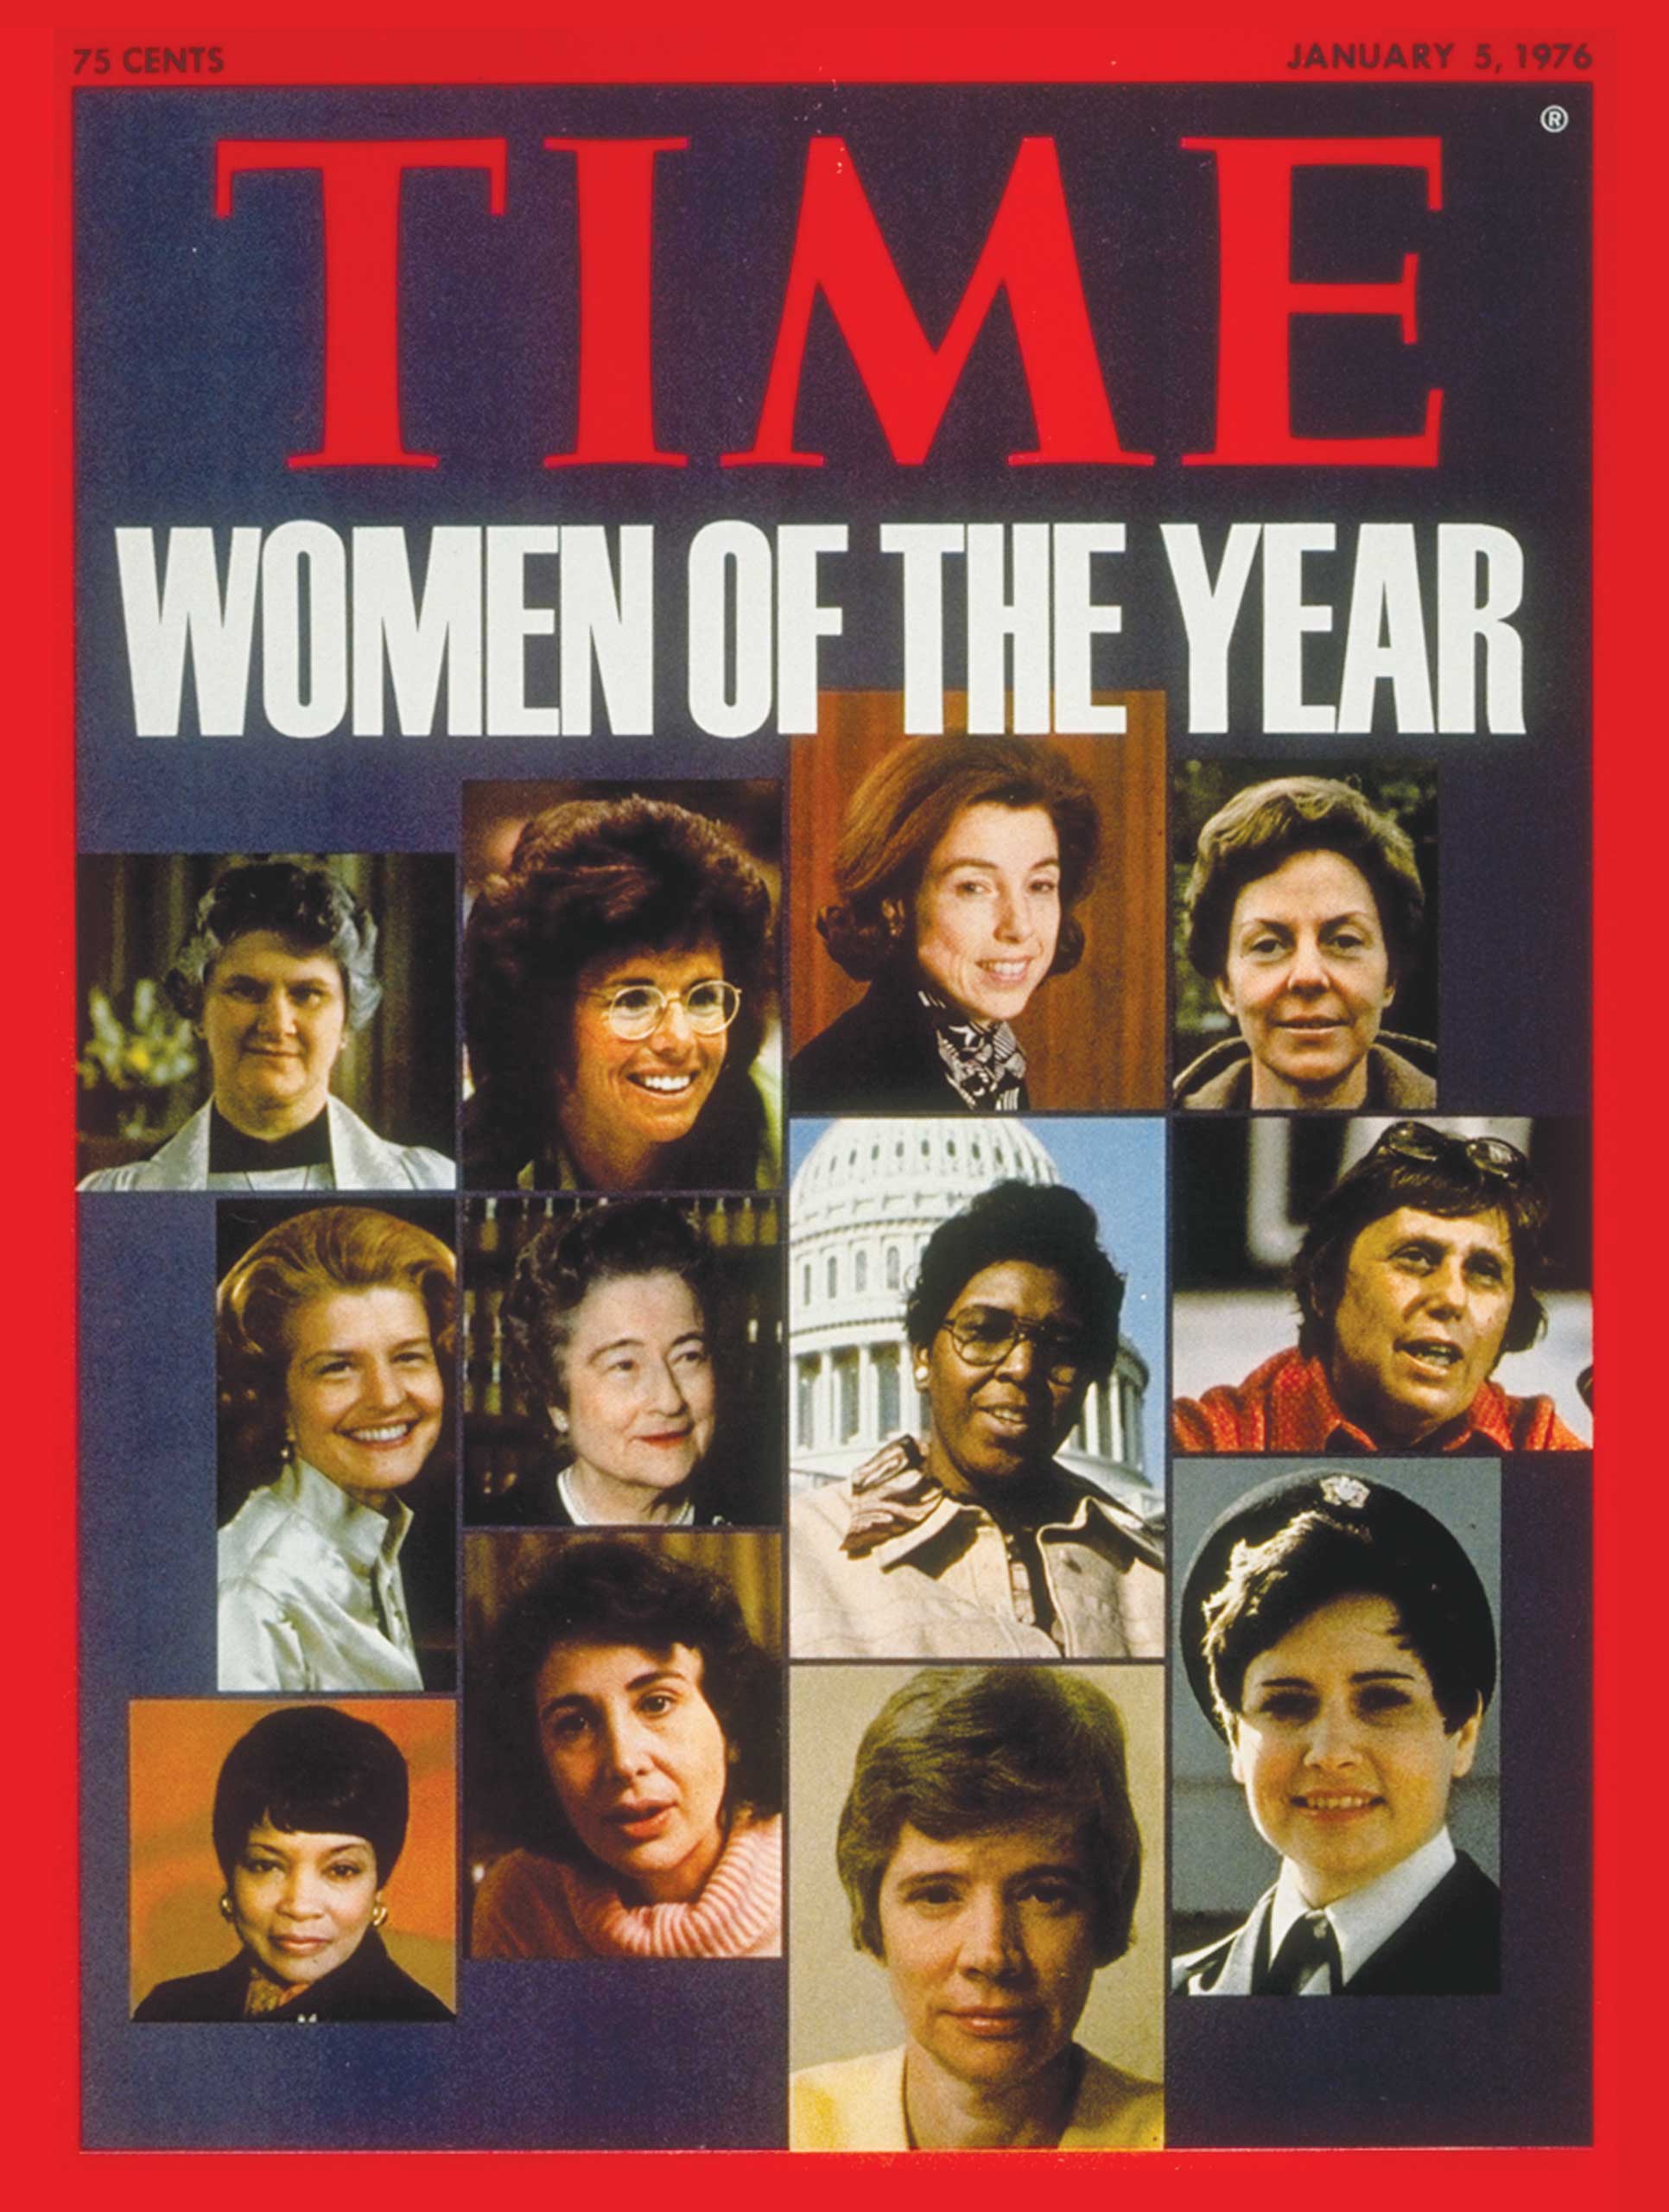 1975: American Women